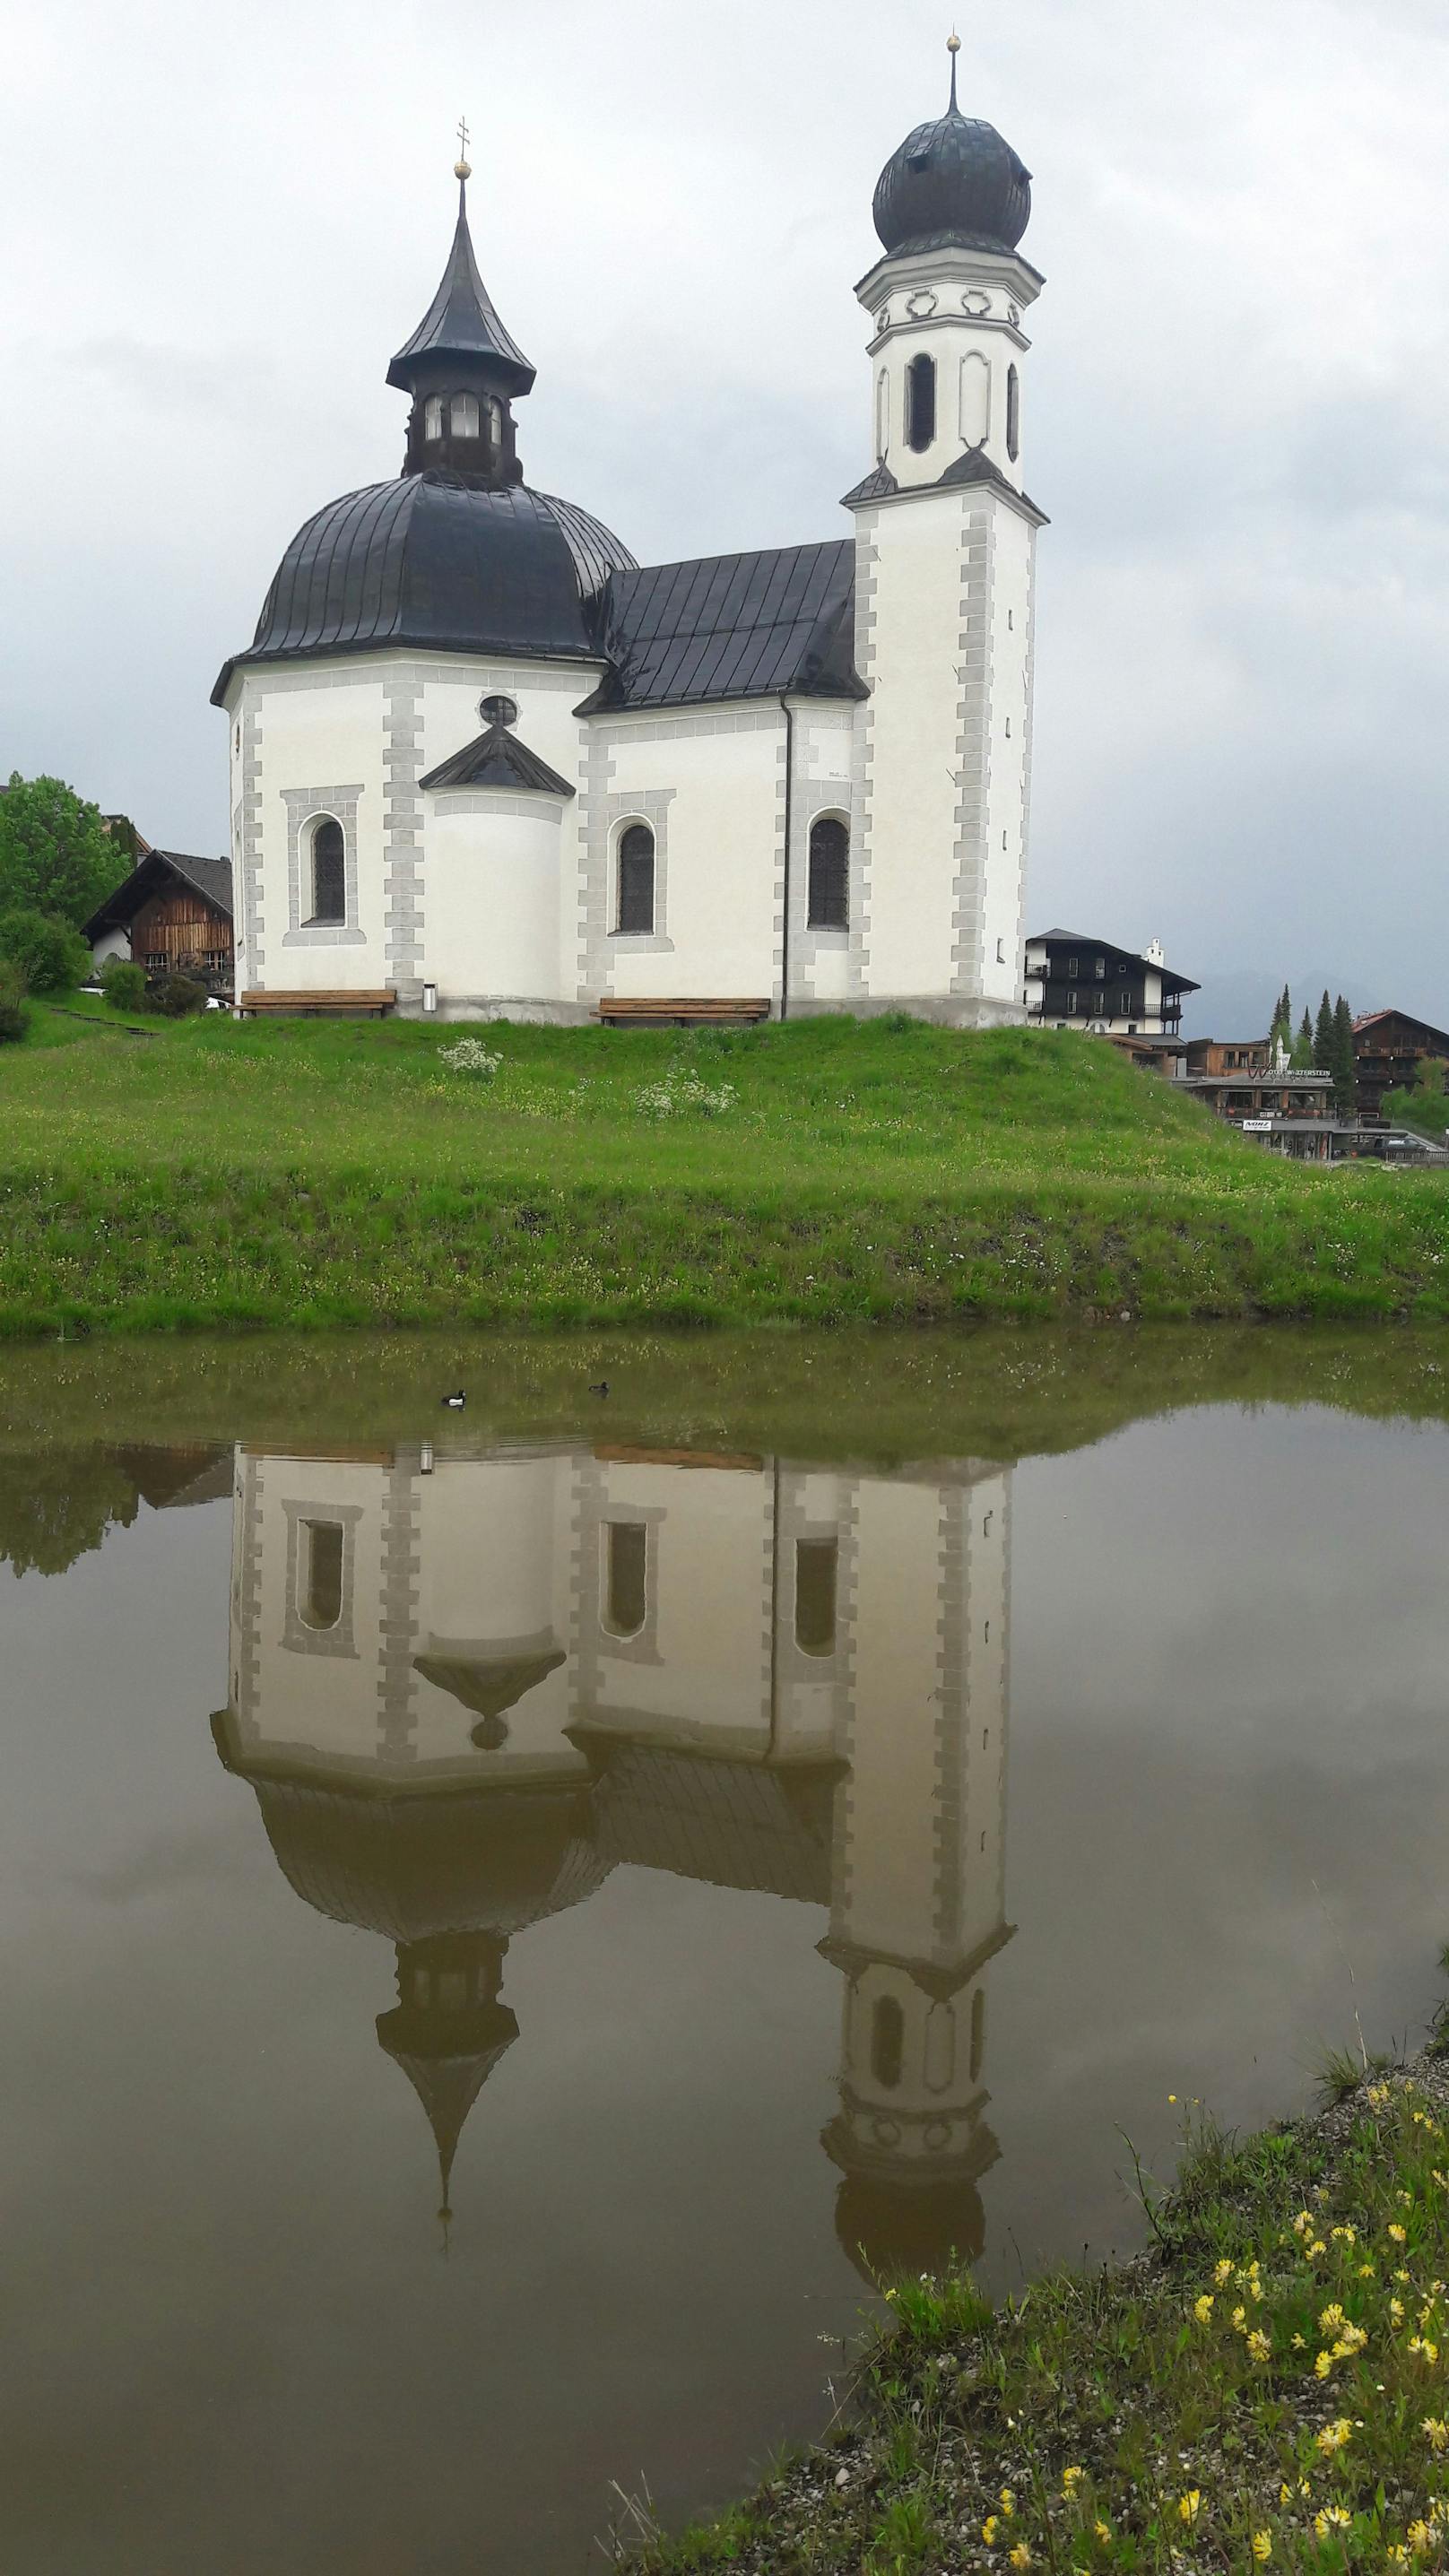 Ein bisschen Kultur: Das Seekirchl, das Wahrzeichen von Seefeld. Wird auch Heiligkreuzkirche genannt. Für Stoßgebete geöffnet.